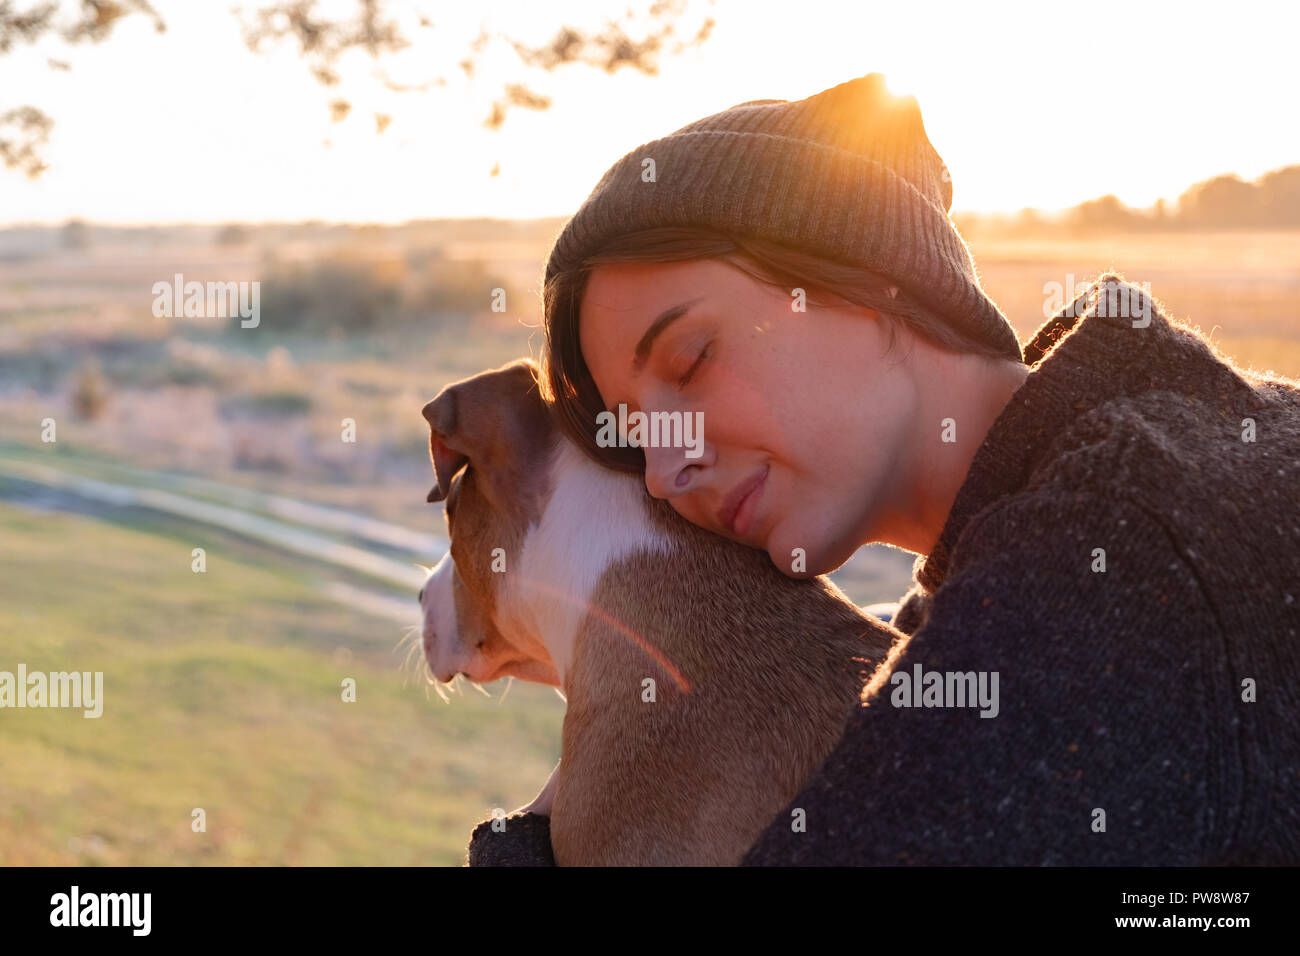 Serrant un chien dans une nature magnifique au coucher du soleil. Soleil du soir face à une femme assise avec son animal de compagnie à côté d'elle Banque D'Images